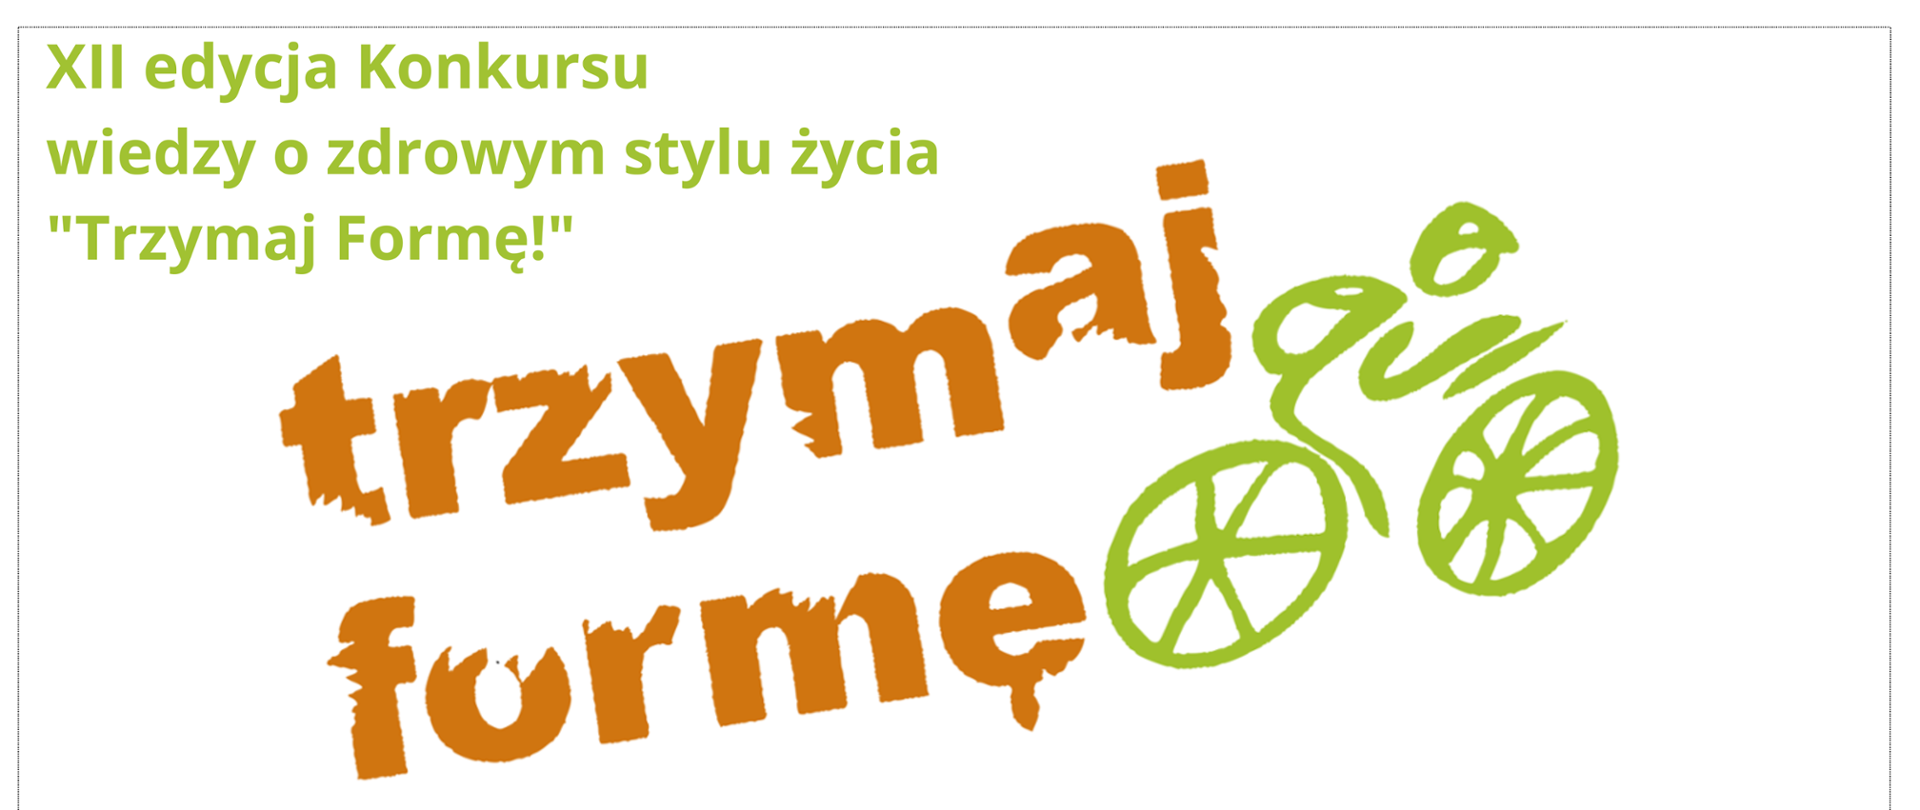 Pomarańczowy napis Trzymaj Formę, ikona rowerzysty. Napis XII edycja Konkursu wiedzy o zdrowym stylu życia "Trzymaj Formę!"